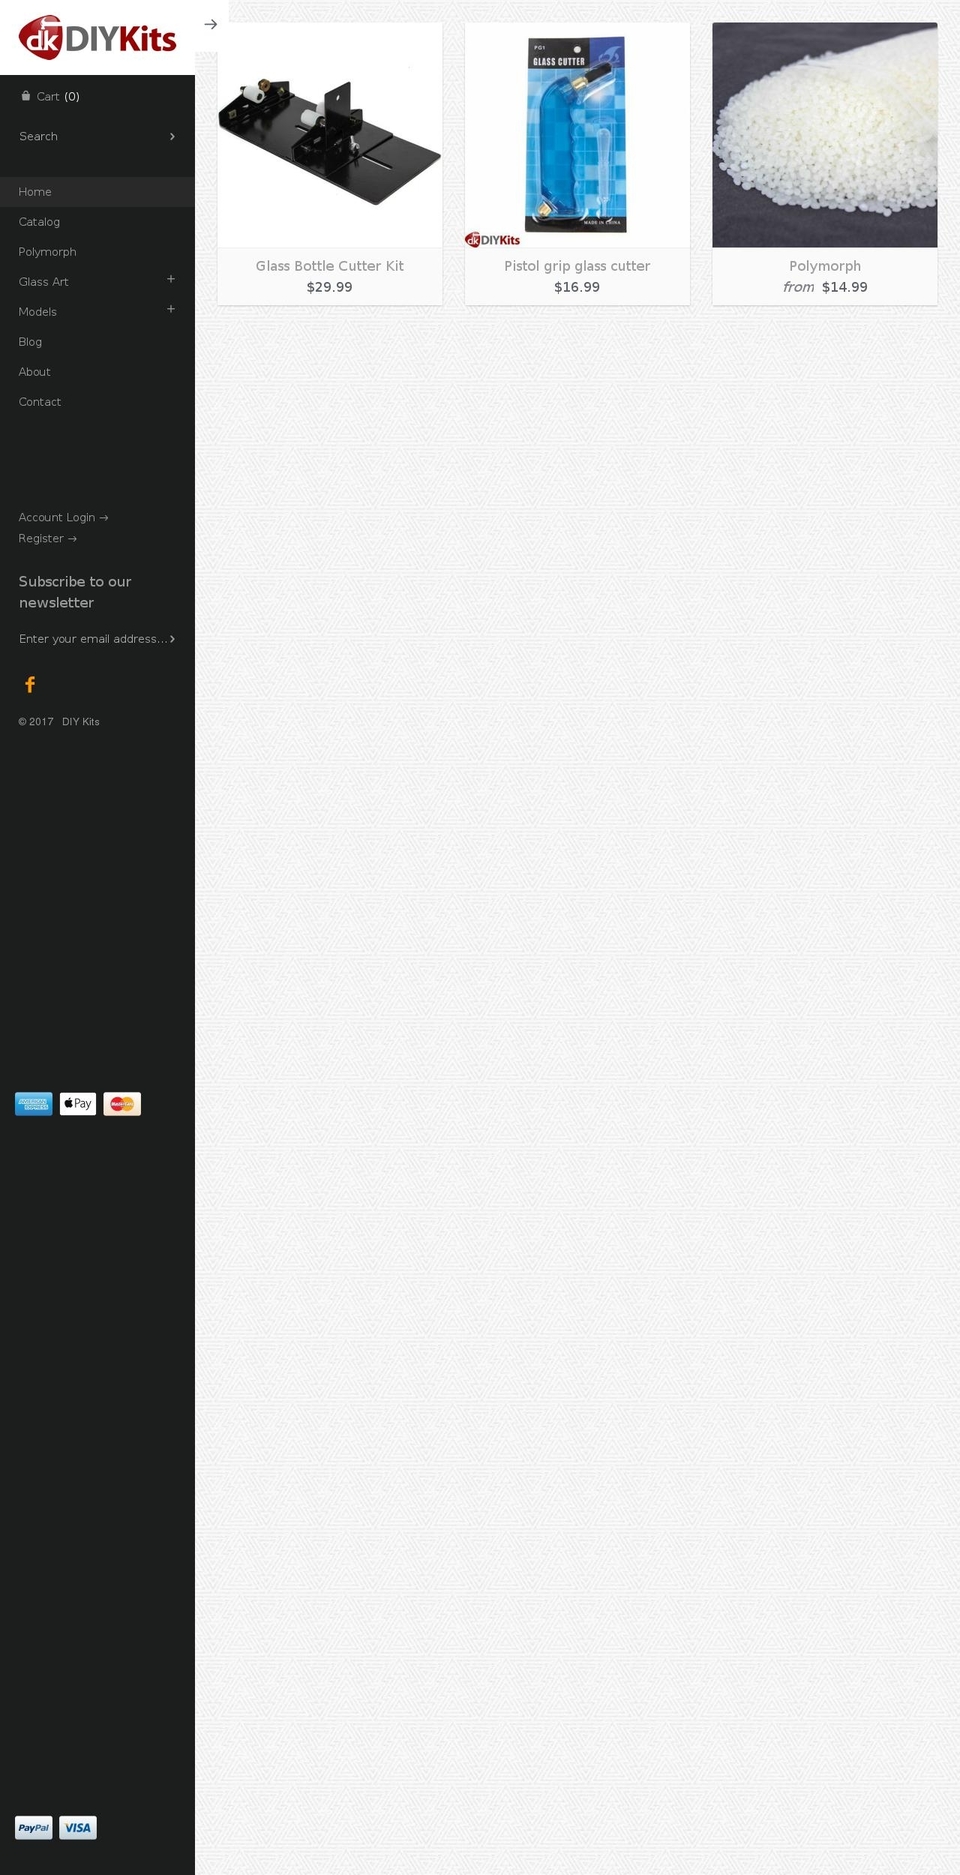 diykits.com.au shopify website screenshot